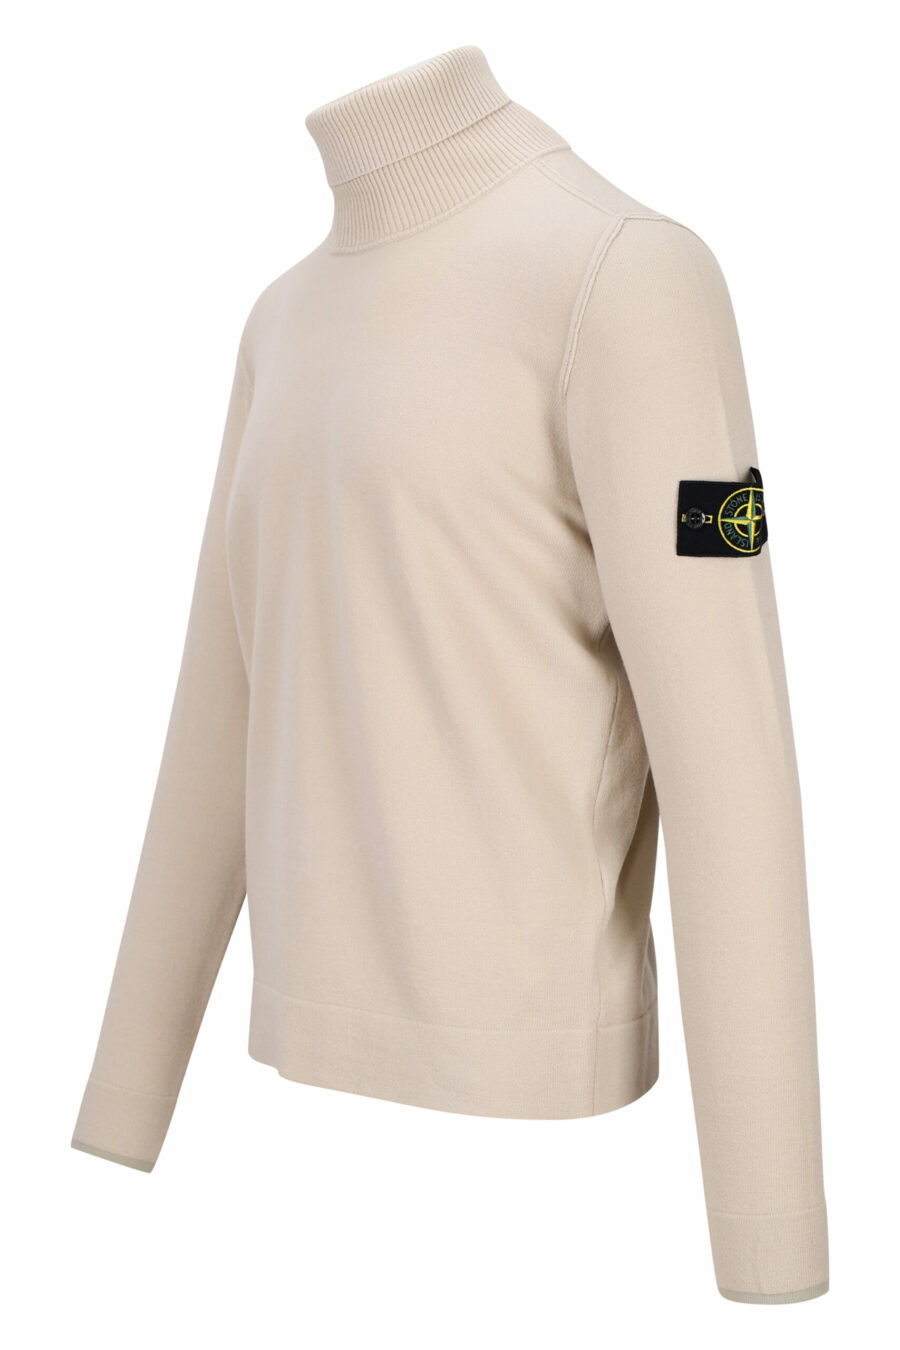 Beigefarbenes Sweatshirt mit hohem Kragen und seitlichem Logoaufnäher - 8052572740954 1 skaliert